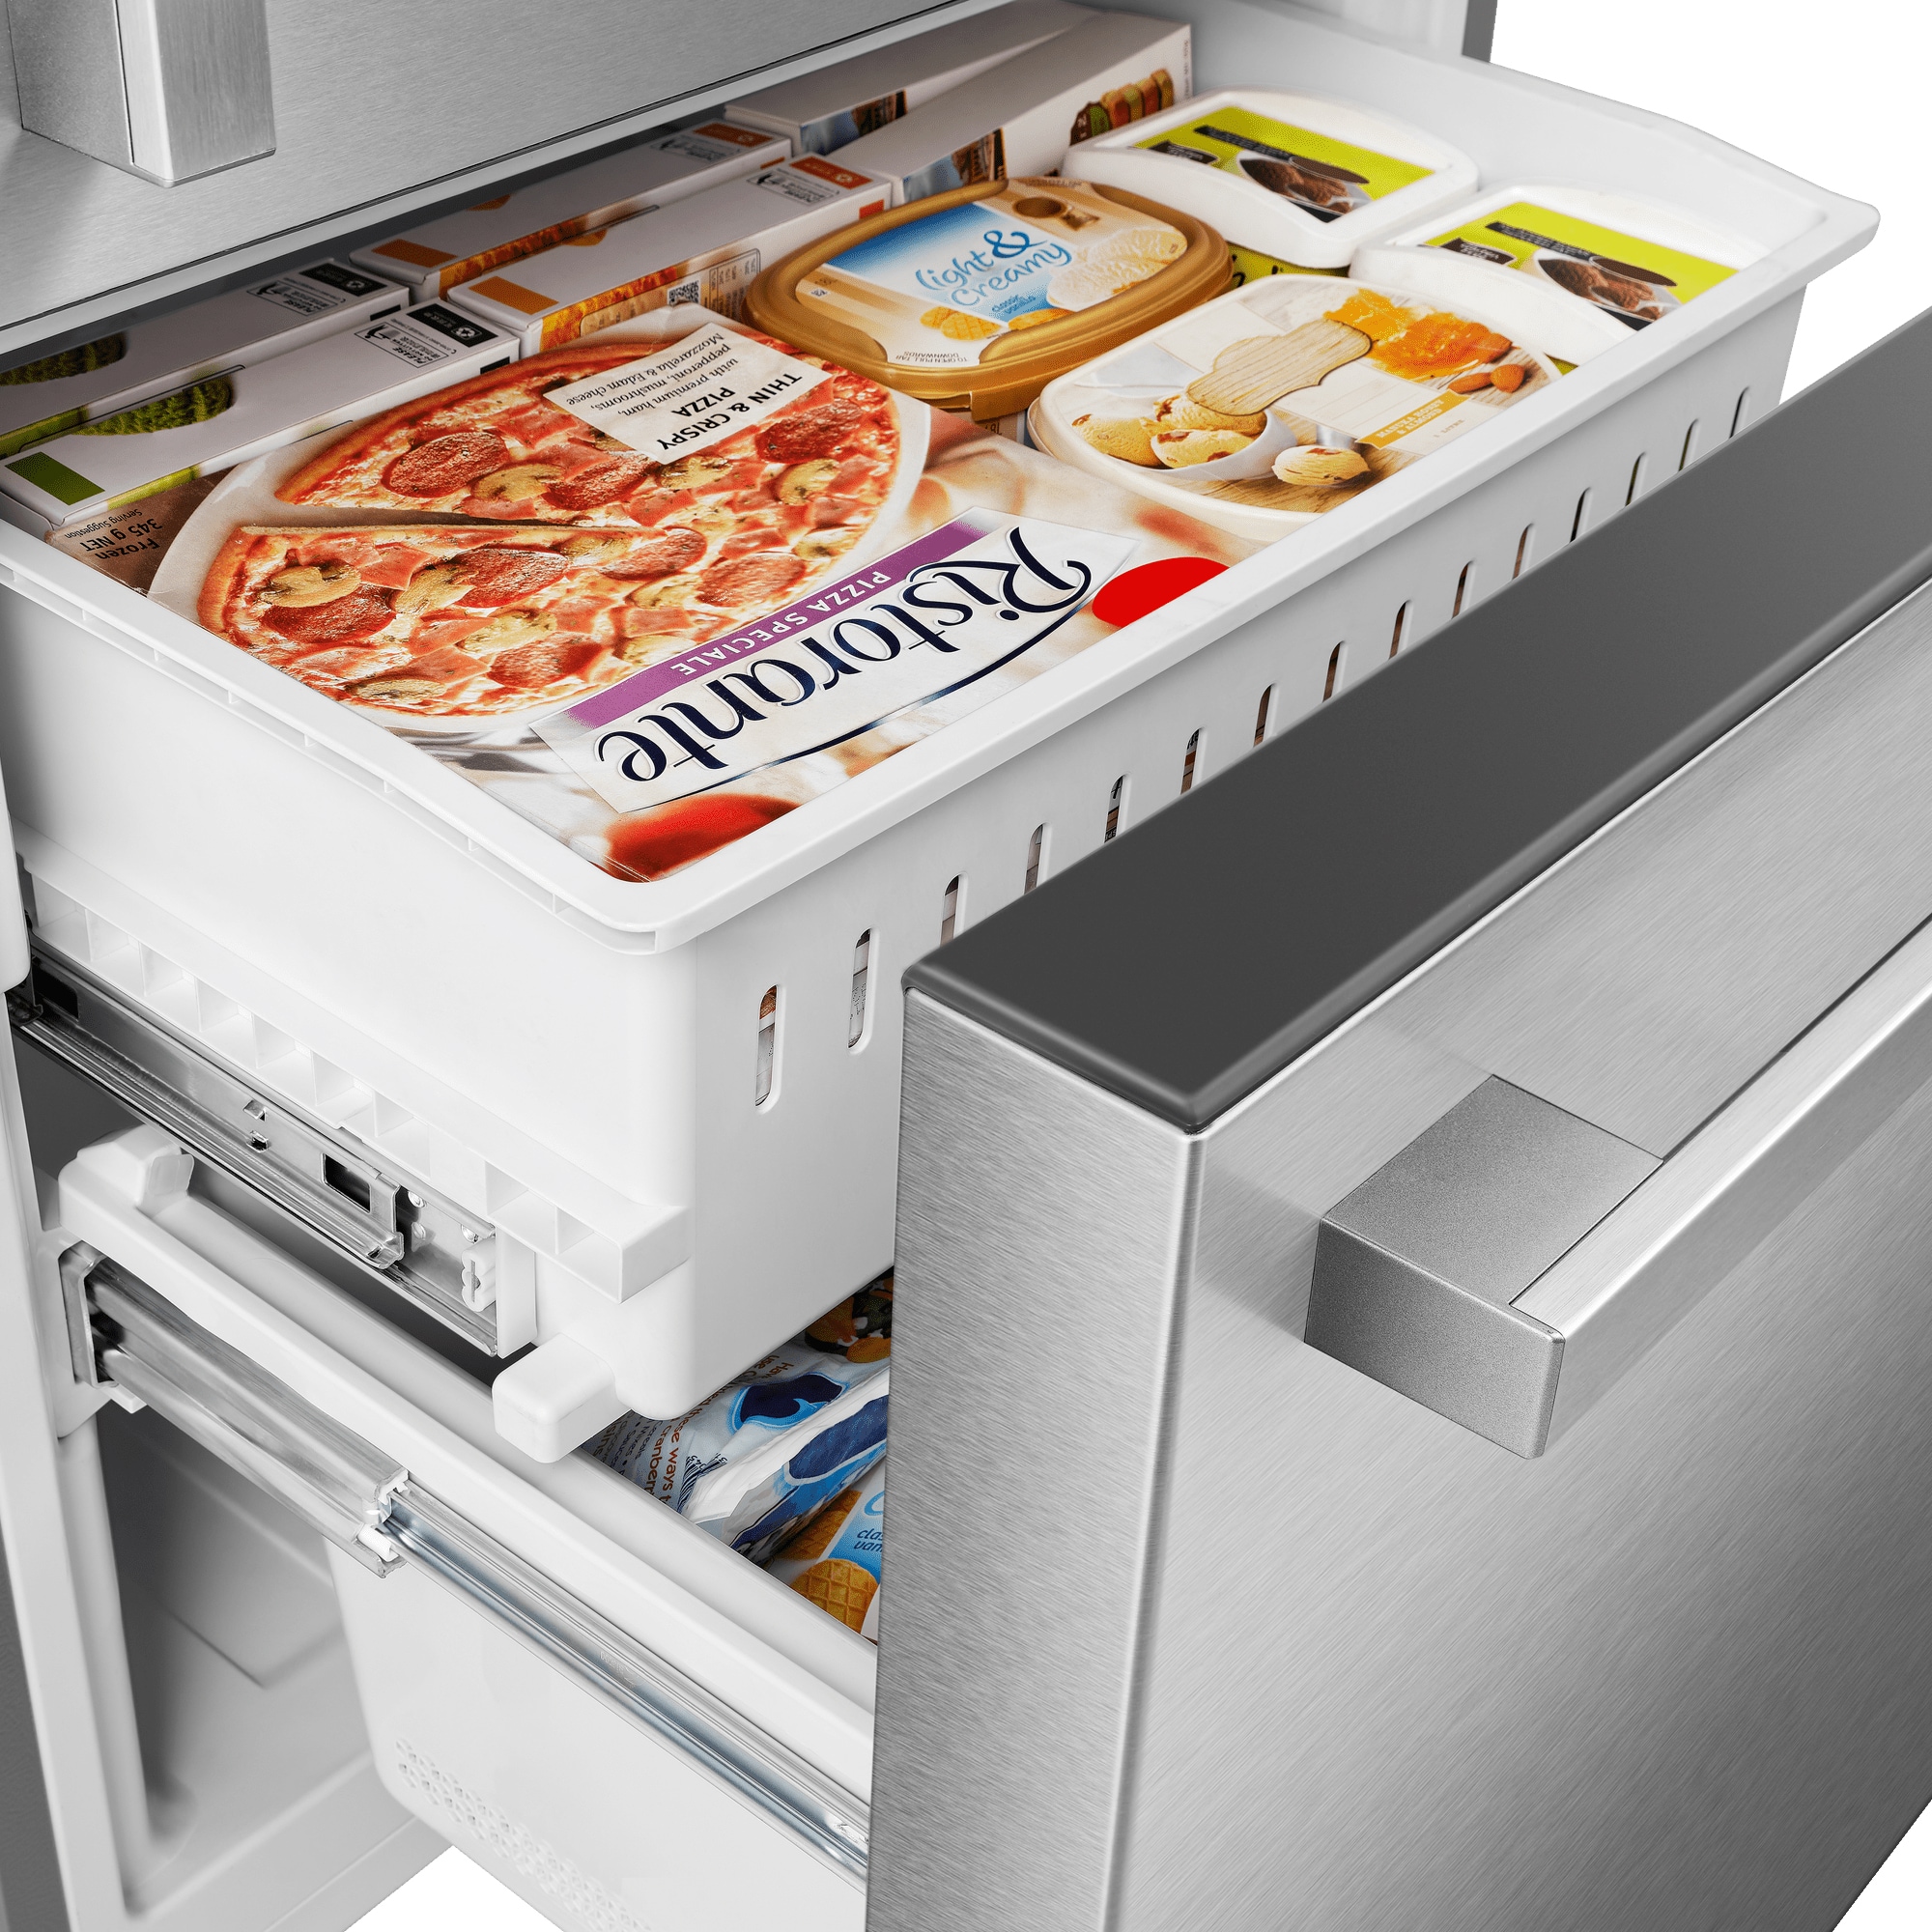 Mora 17.2 cu. ft. Counter Depth Bottom Freezer Refrigerator with LED  Interior Lighting